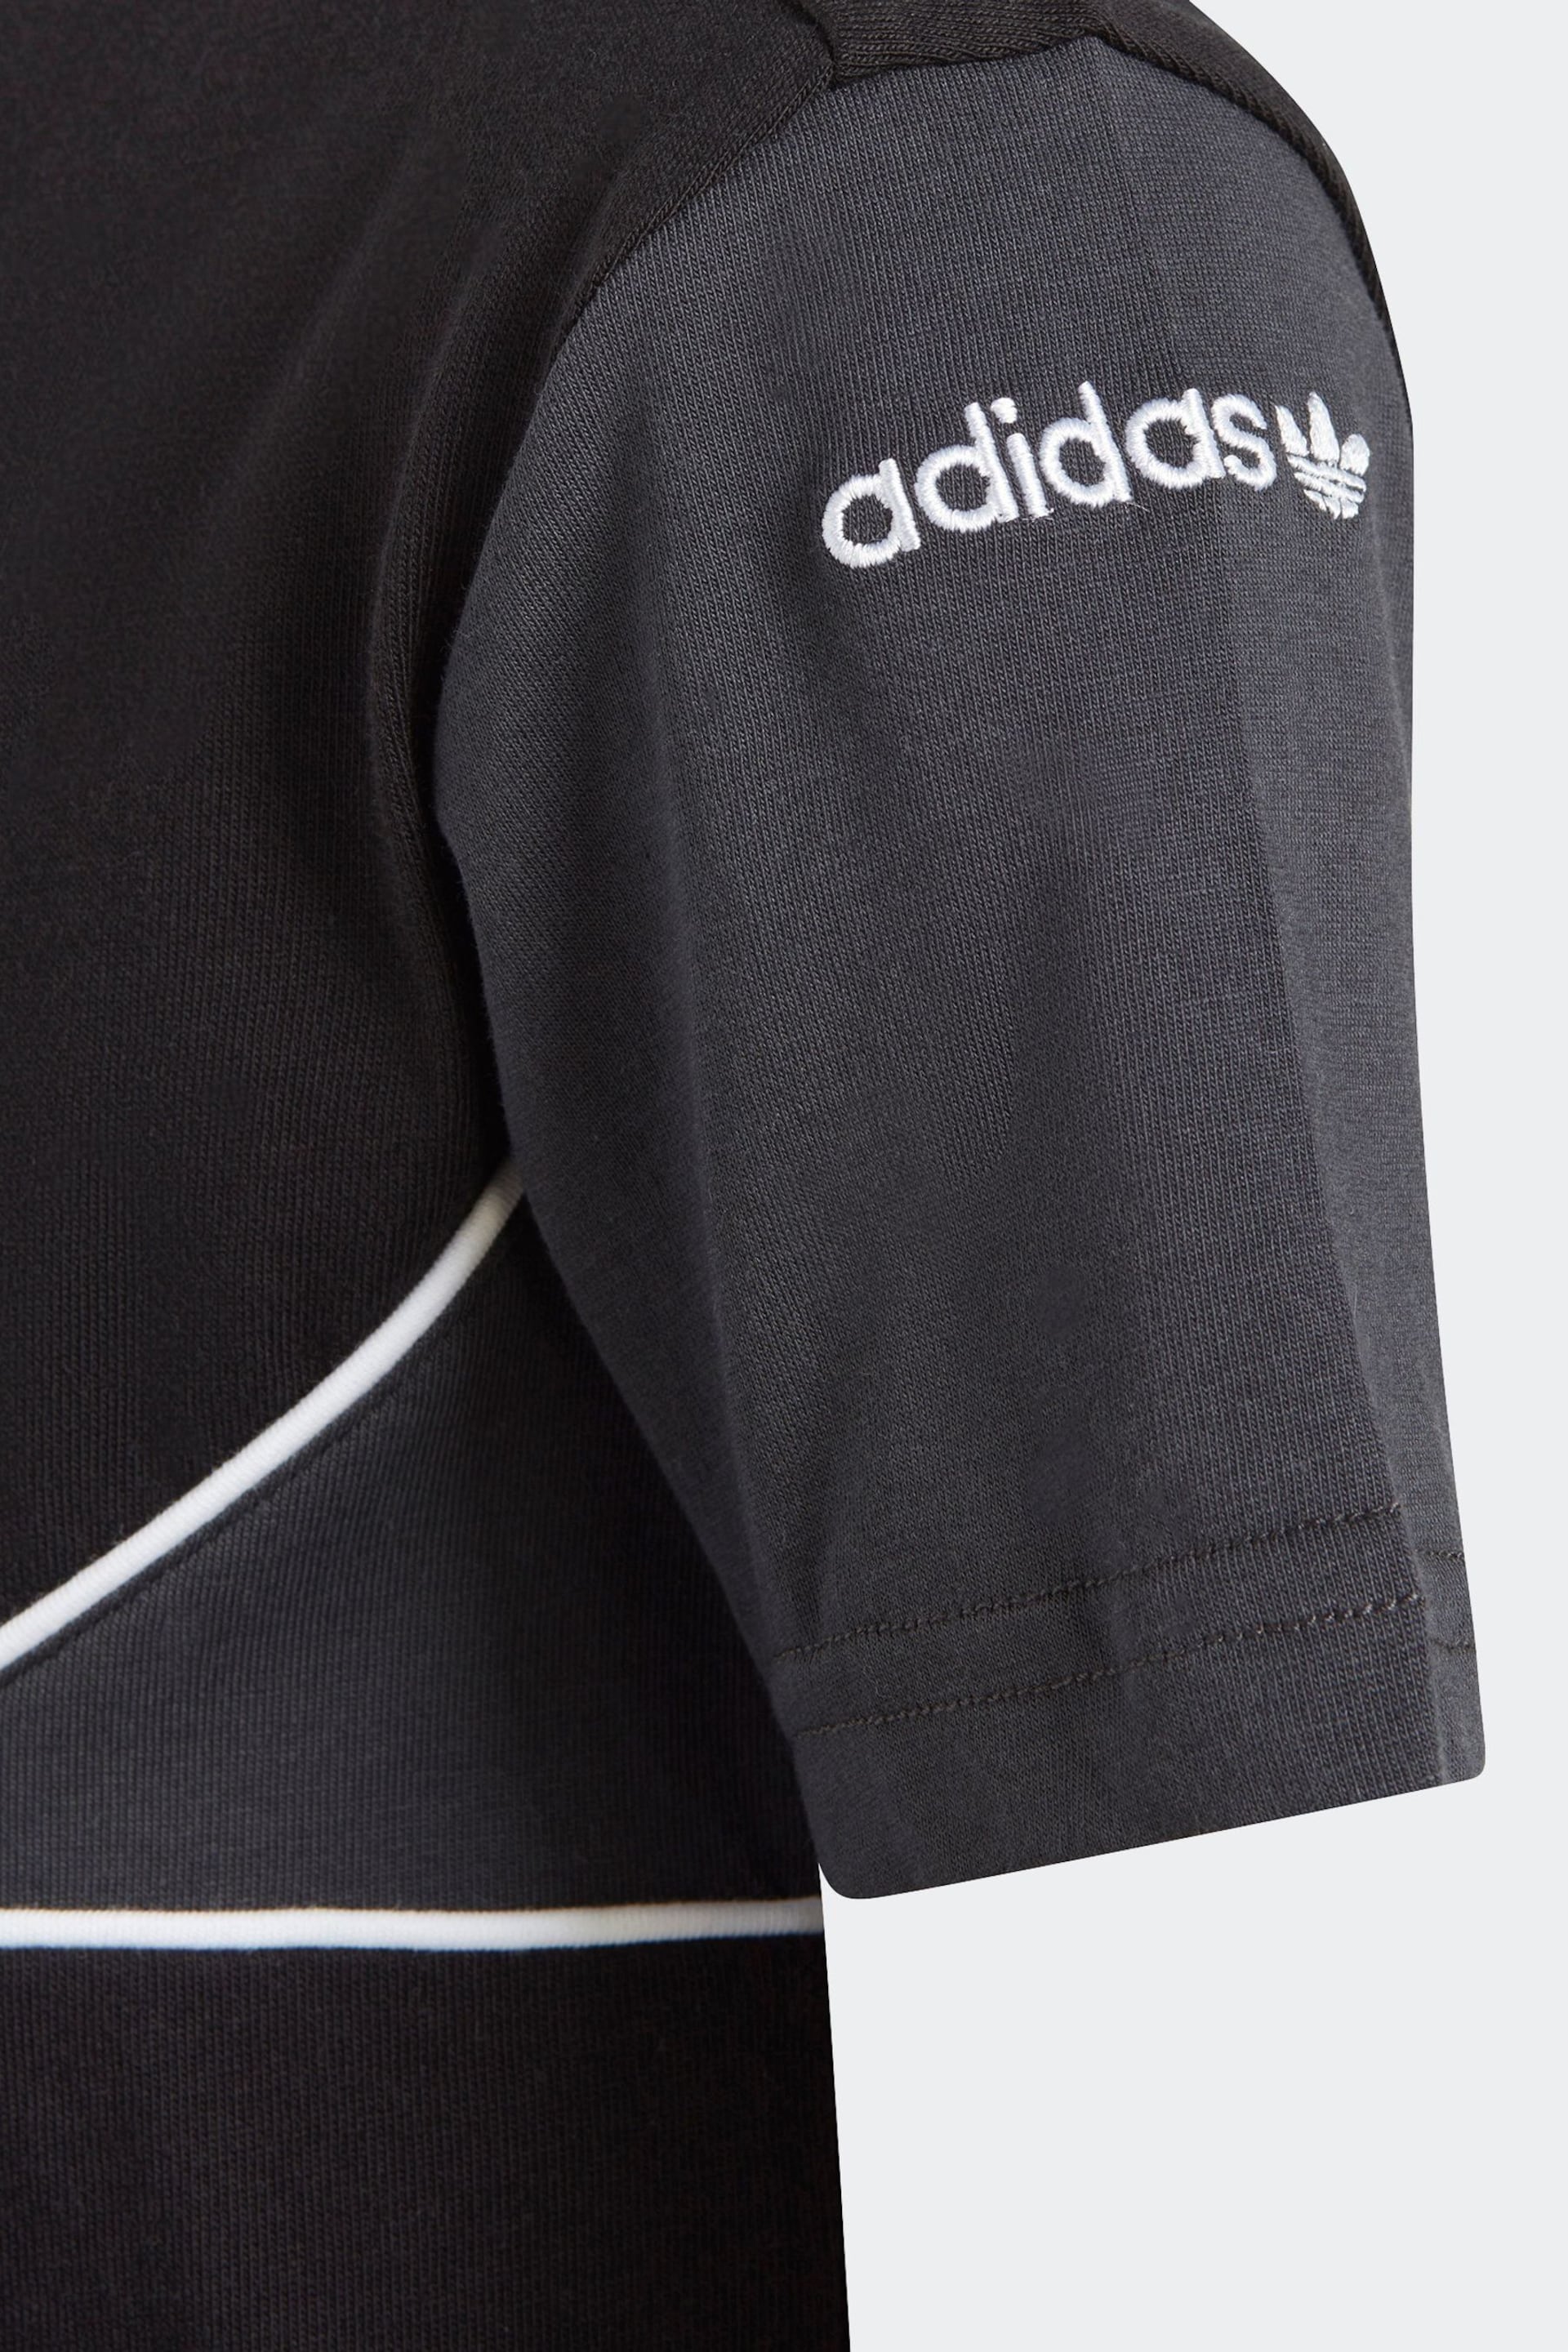 adidas Originals Adicolor T-Shirt and Shorts Set - Image 5 of 7